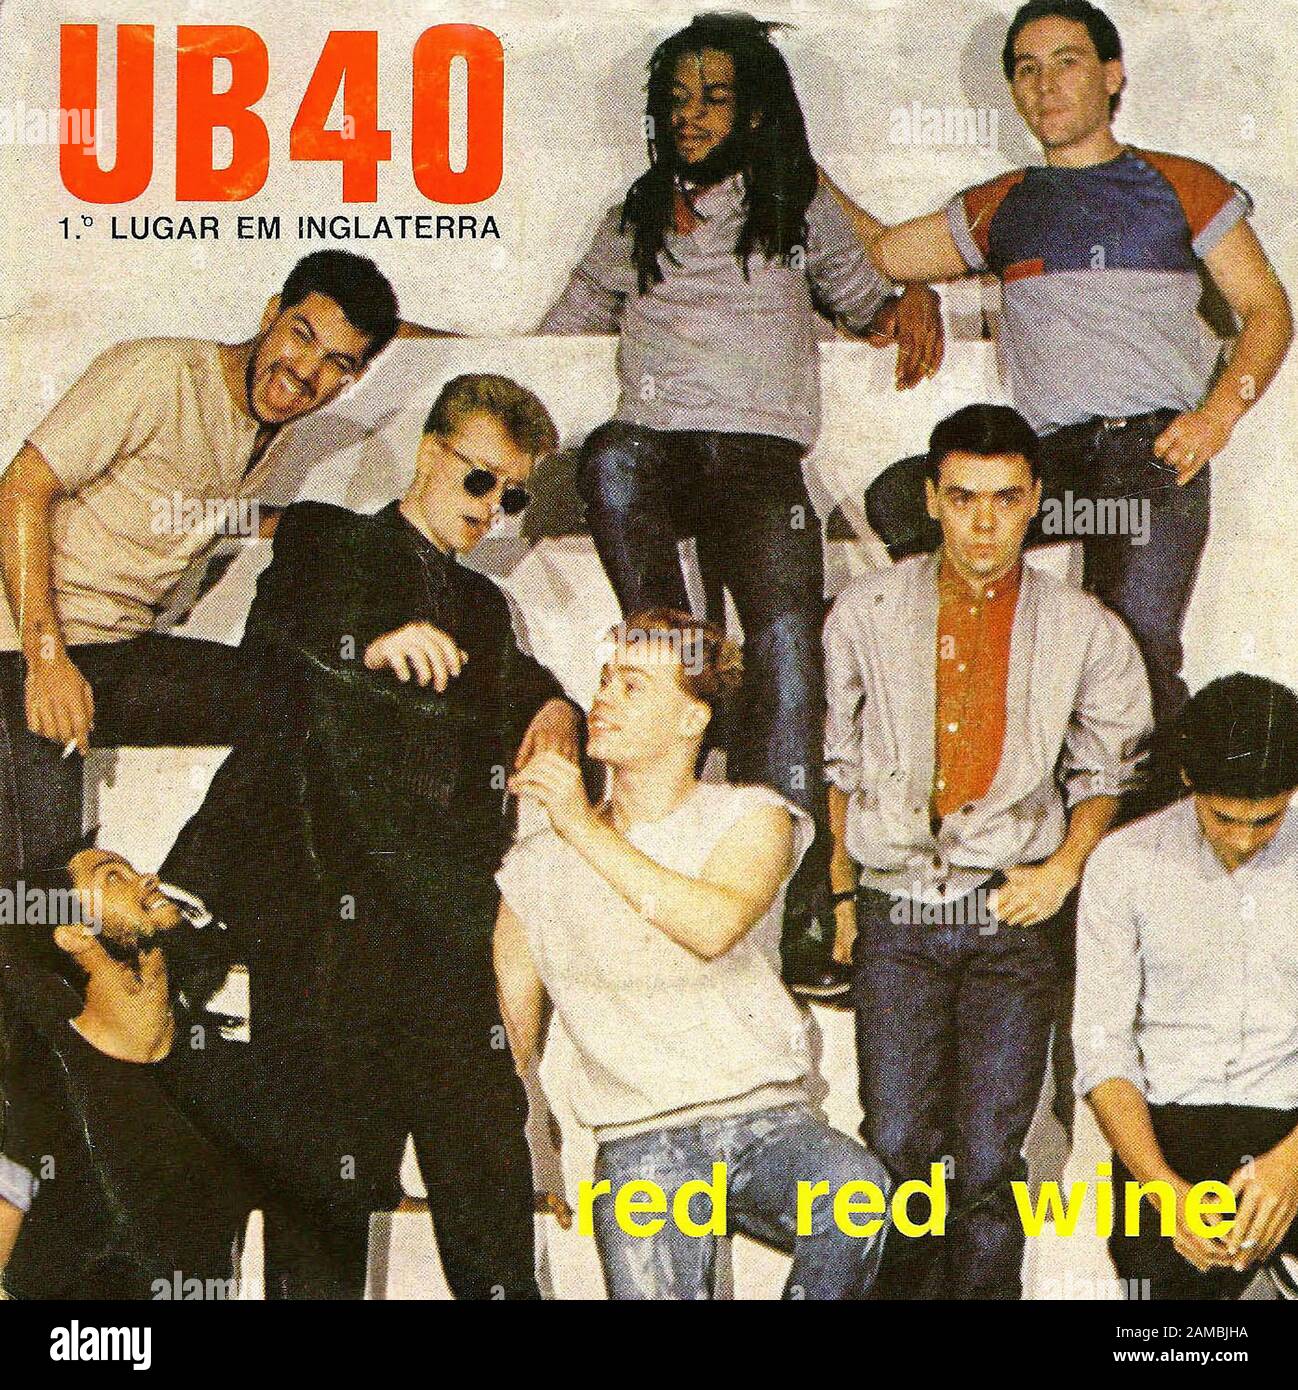 UB40 - Red Red Wine - Classic vintage vinyl album Stock Photo - Alamy